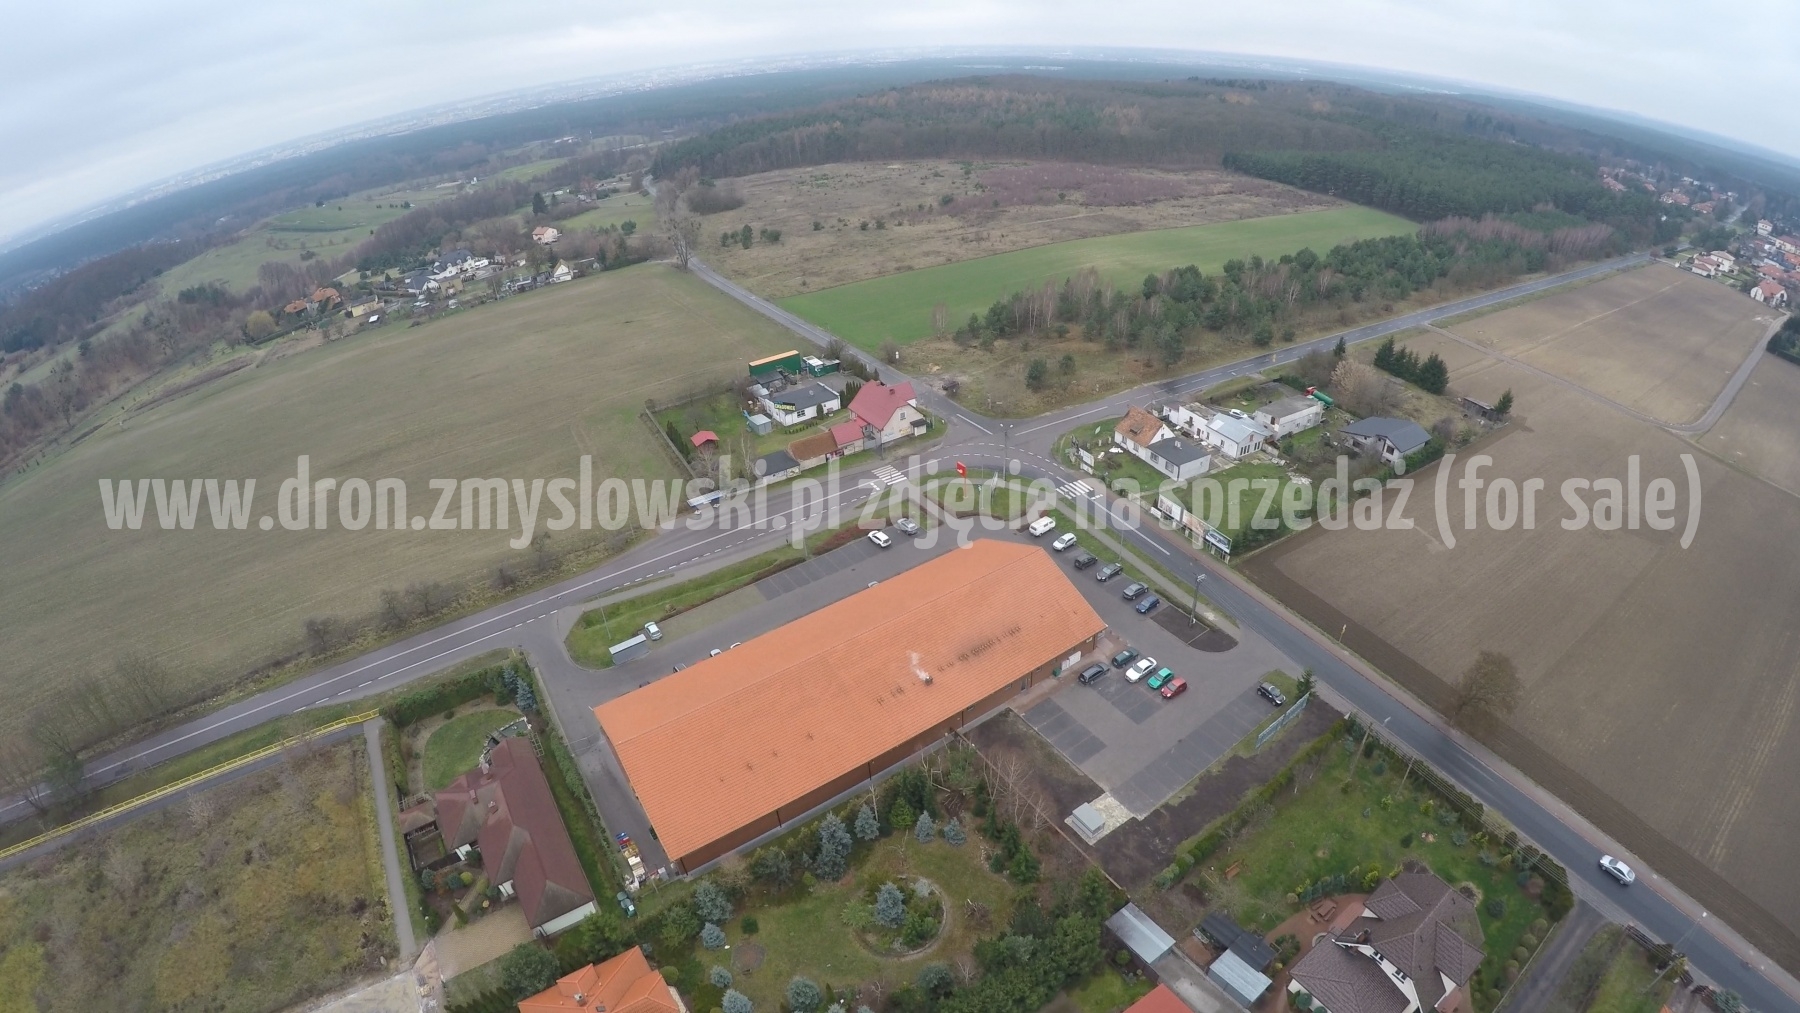 2015-11-29-lot-dronem-w-Niemczu-kolo-sklepu-Polo-001